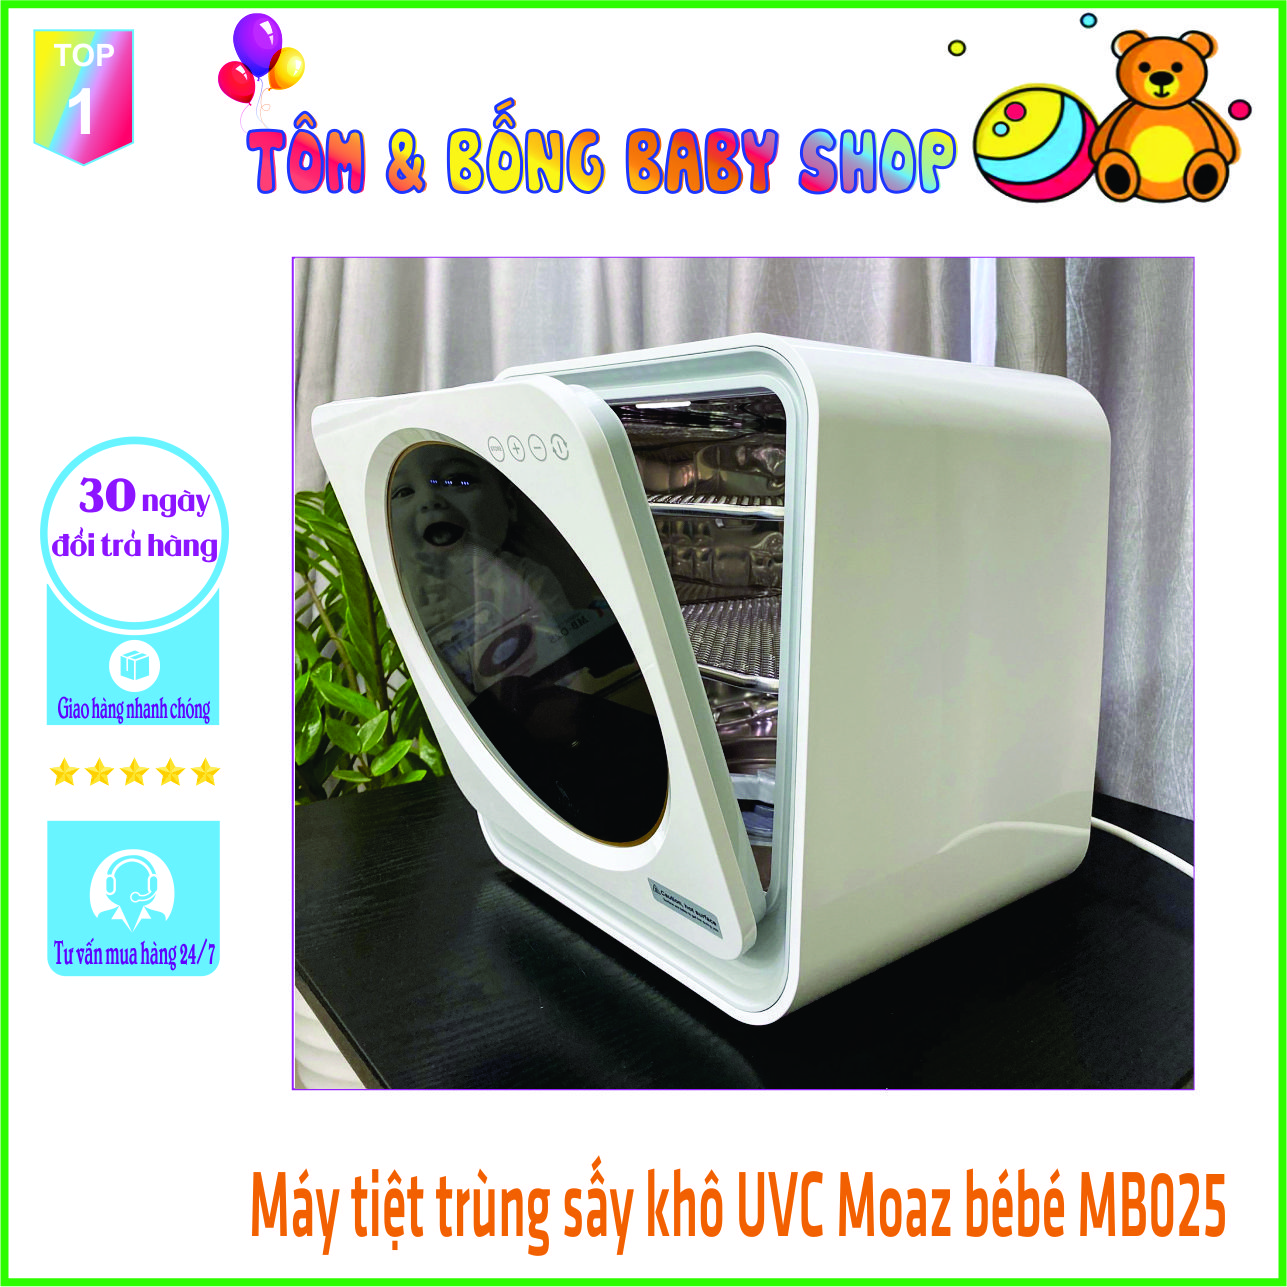 Máy tiệt trùng sấy khô tia UVC và bảo quản bình sữa Moaz bebe mb025 bảo